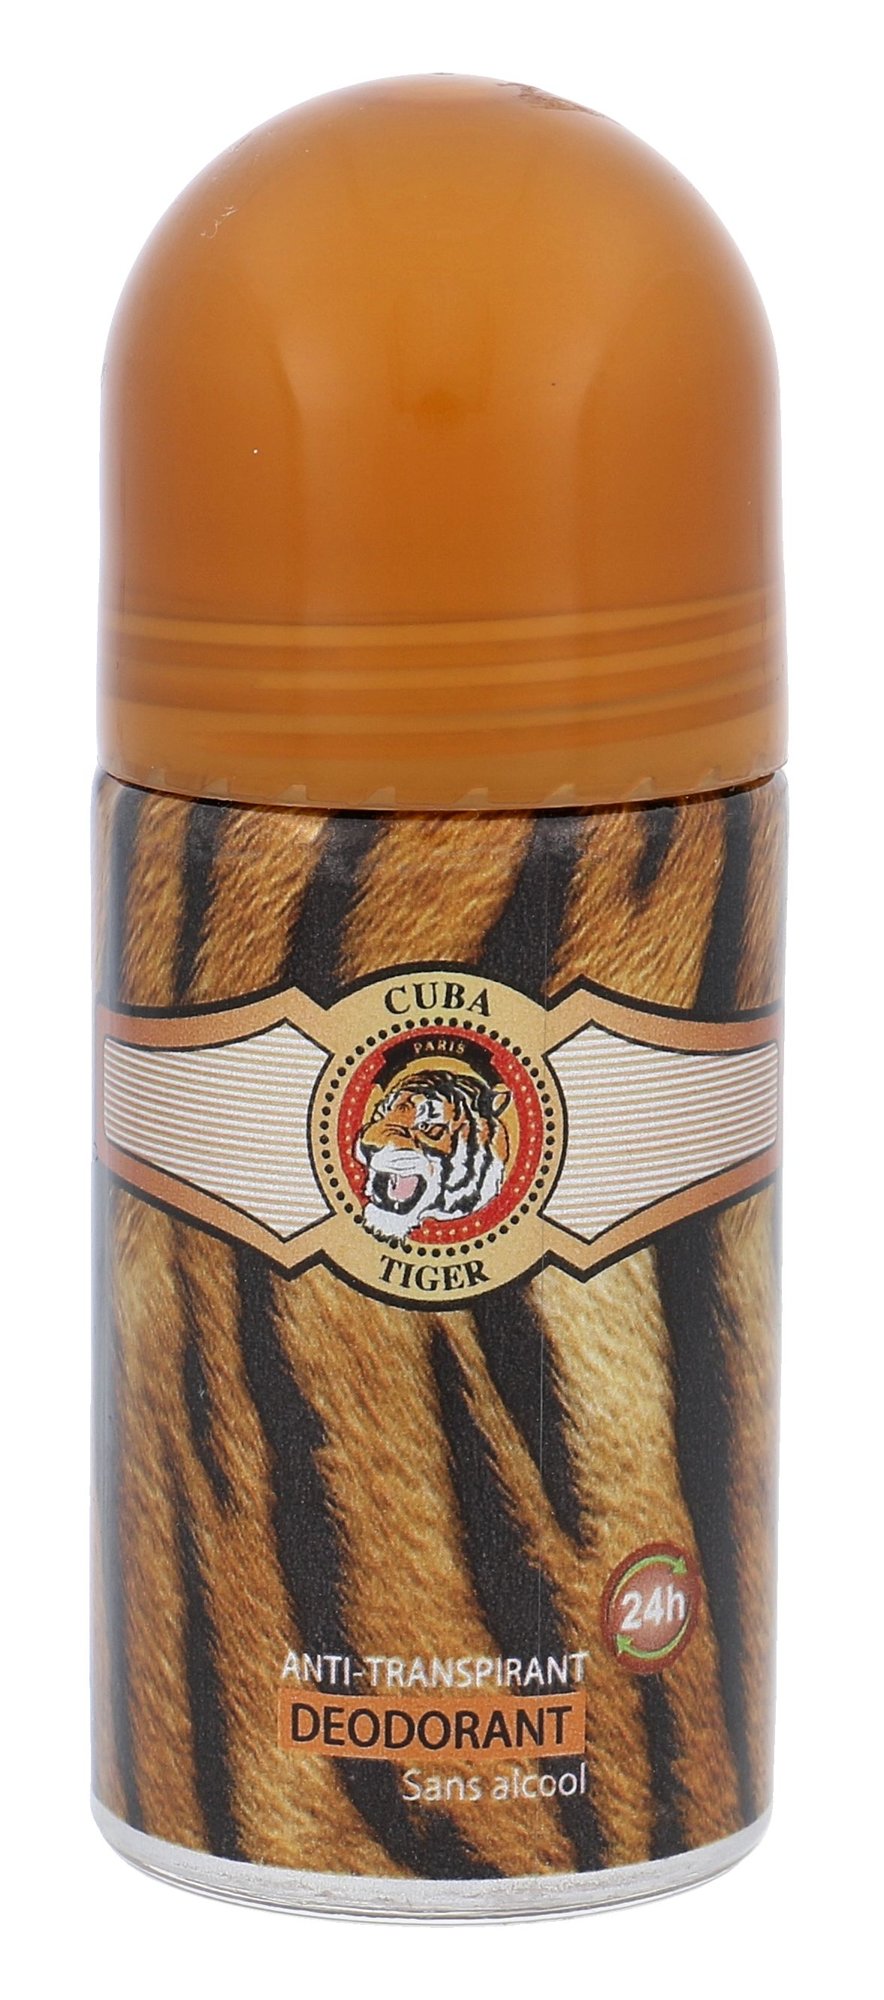 Cuba Tiger dezodorantas